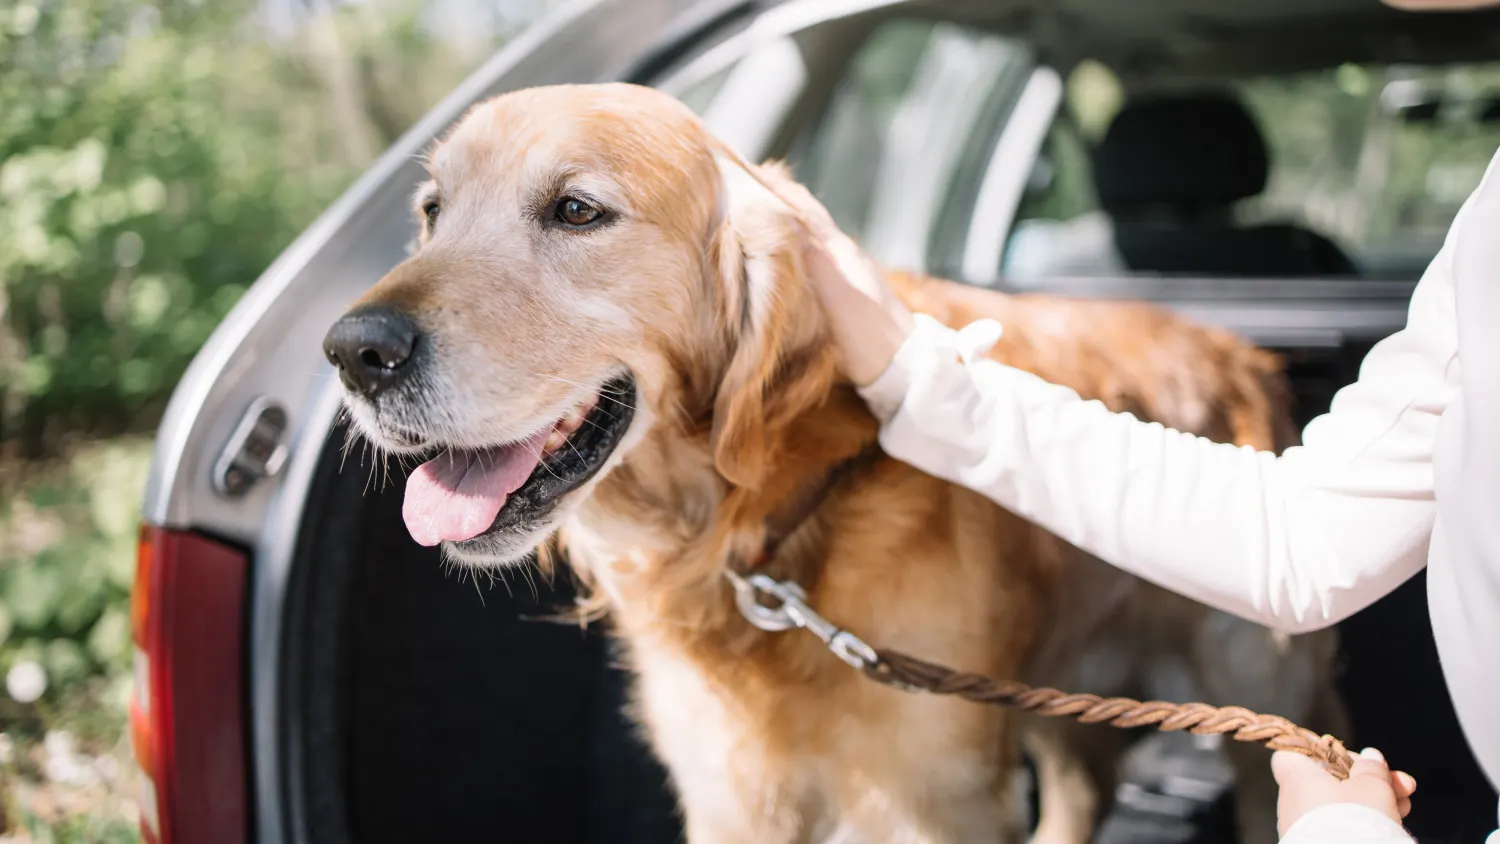 Autofahrt mit Hund - die richtige Ausstattung im Auto